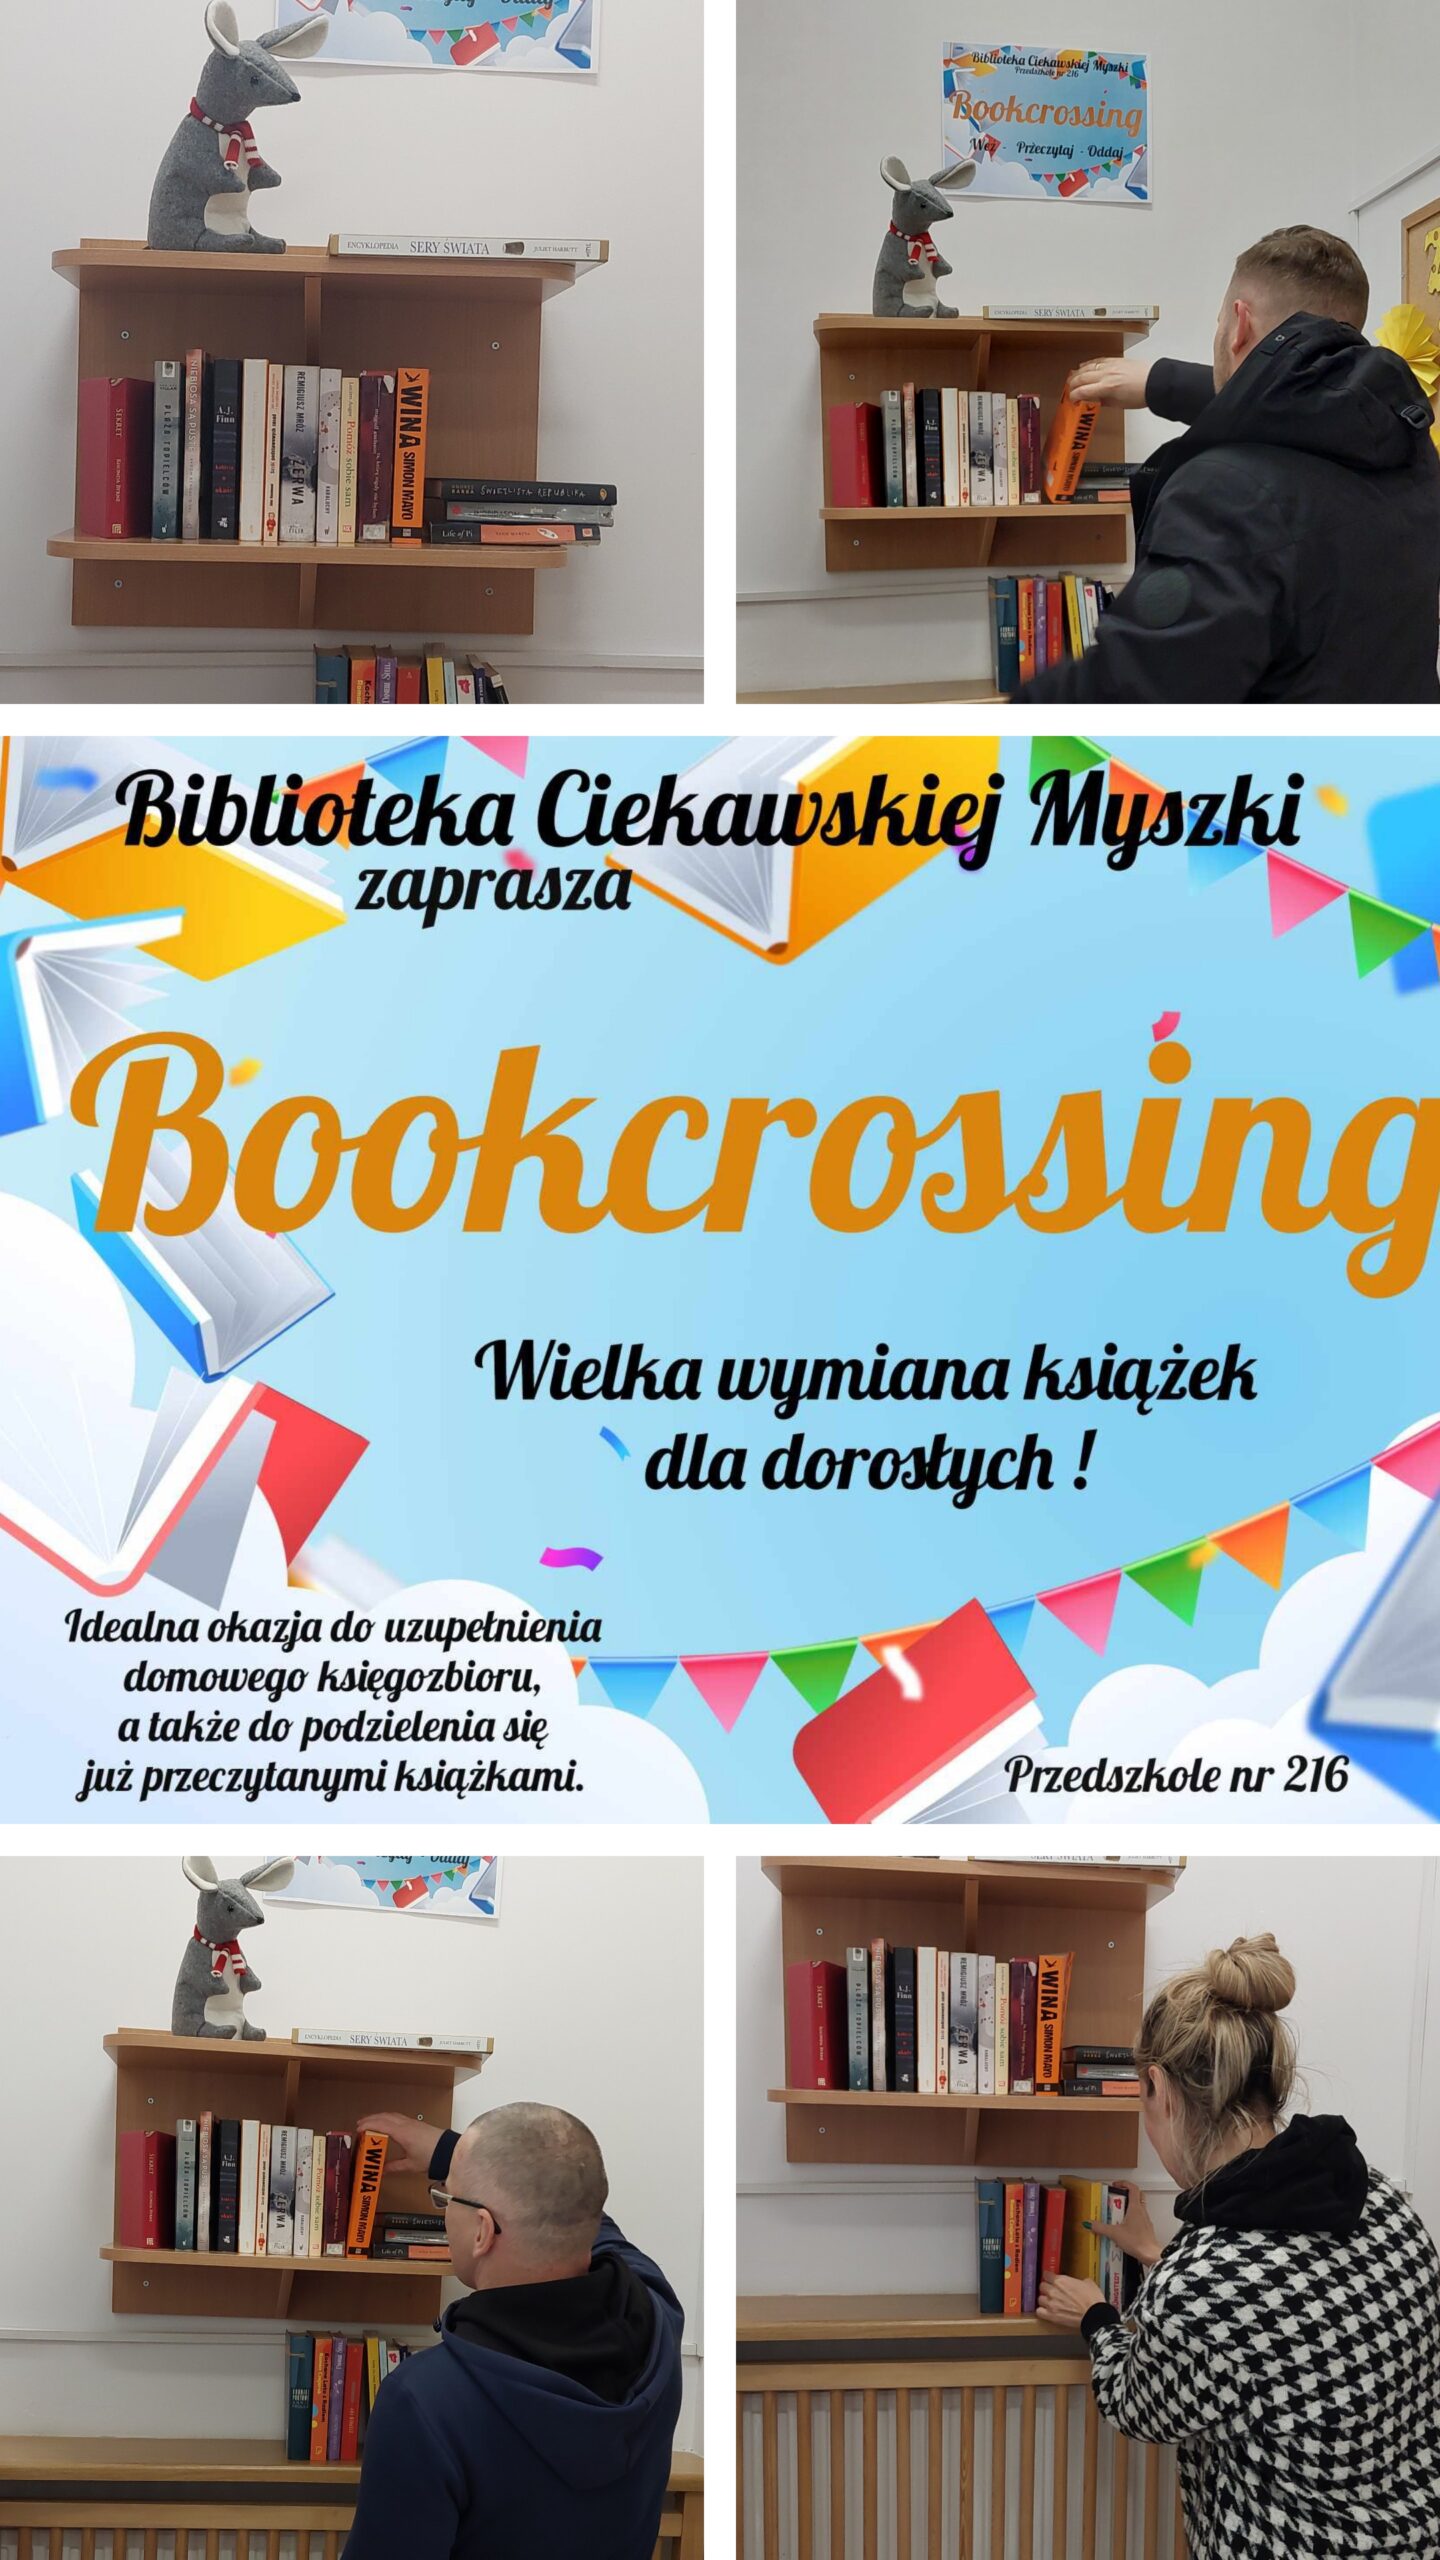 You are currently viewing Biblioteka Ciekawskiej Myszki